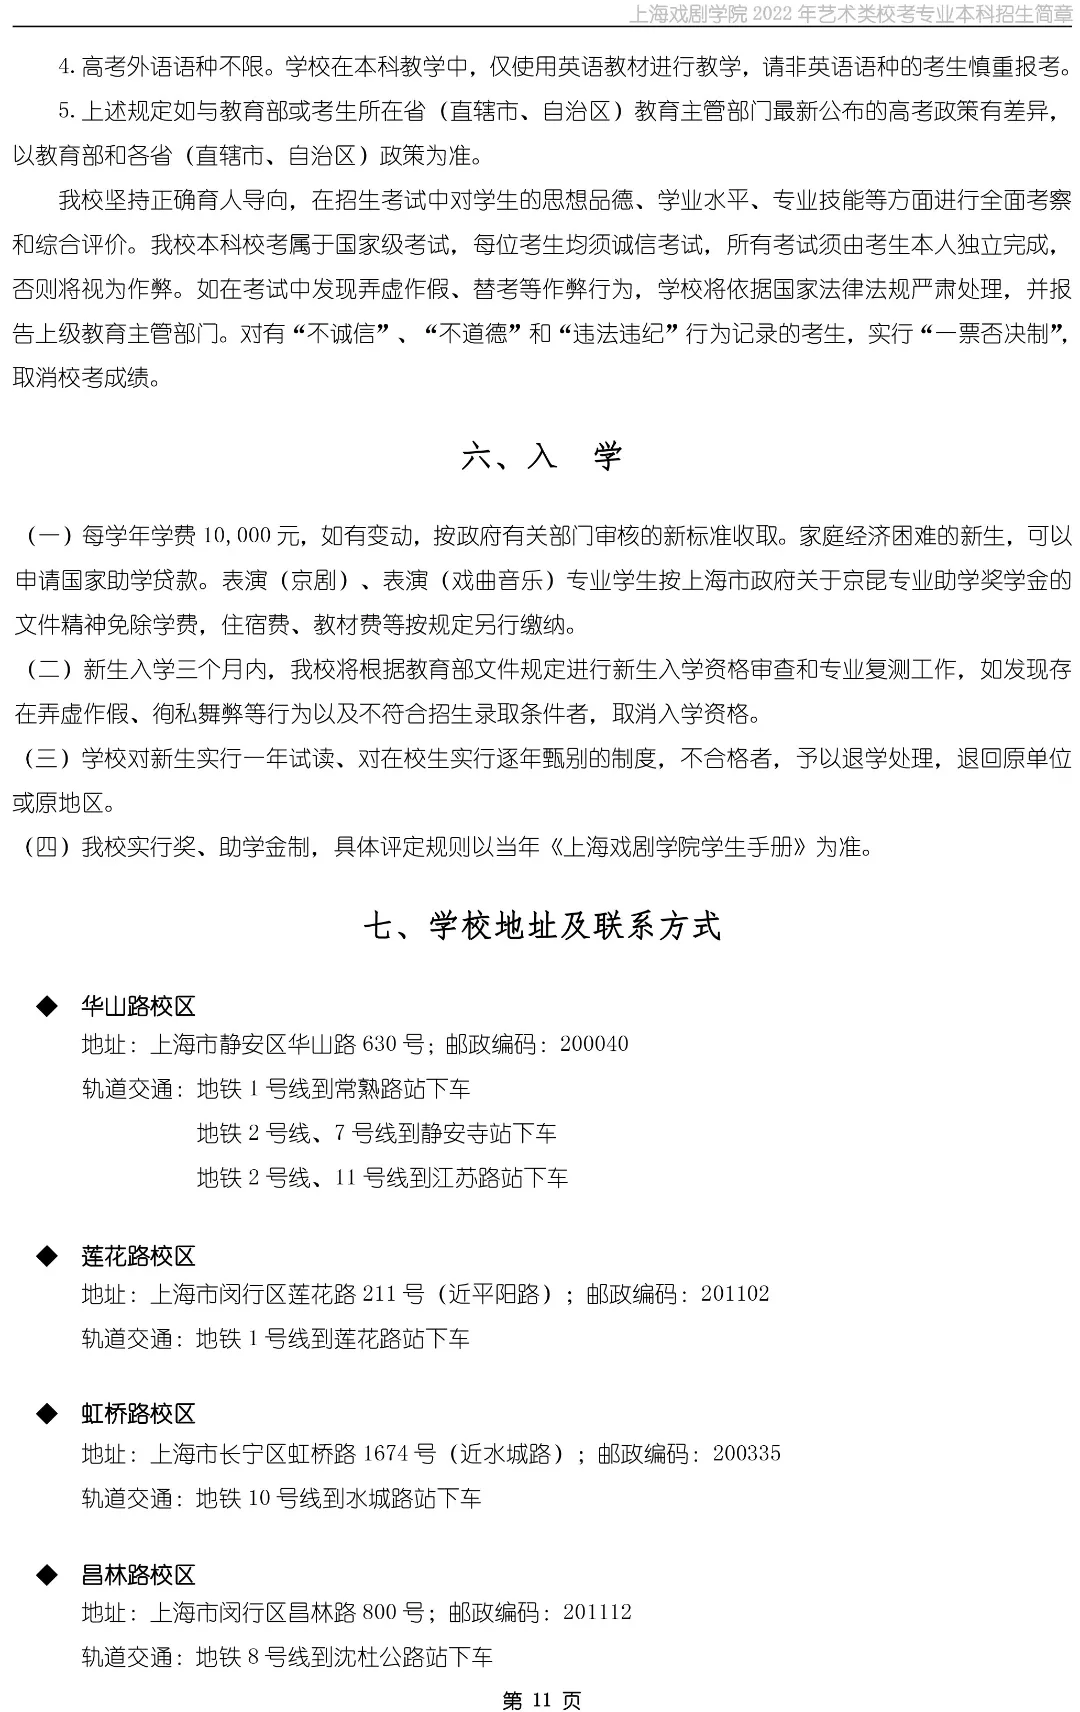 上海戏剧学院2022年艺术类校考专业本科招生简章